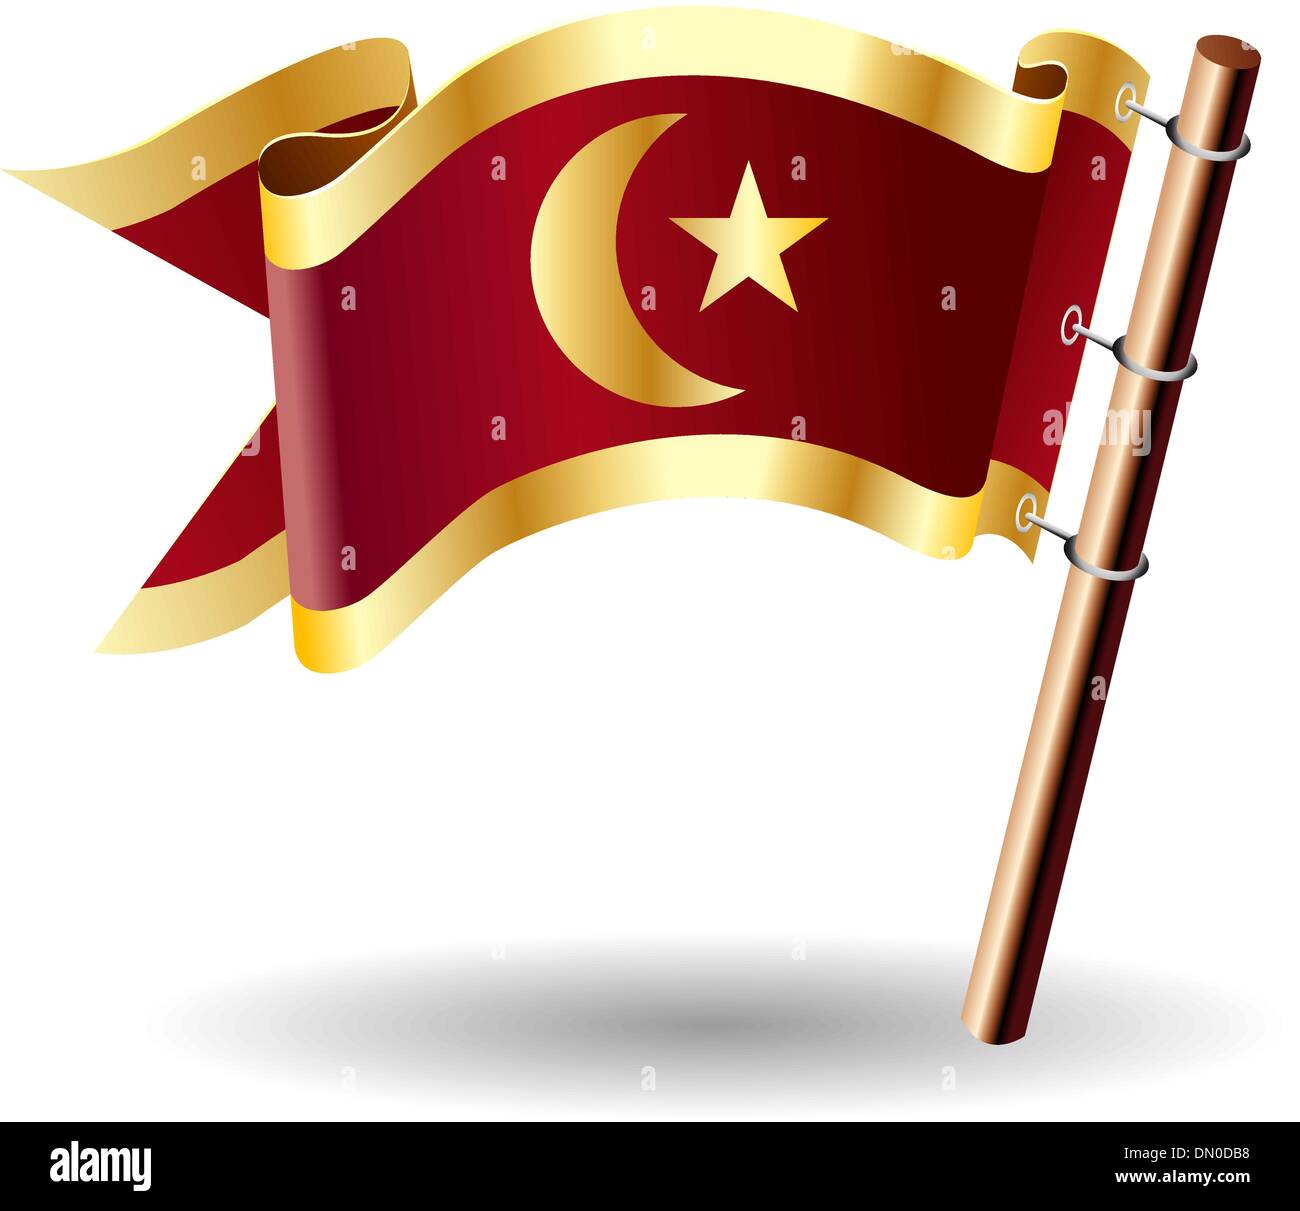 Islamischen Halbmond und Stern königliche Flagge Stock Vektor